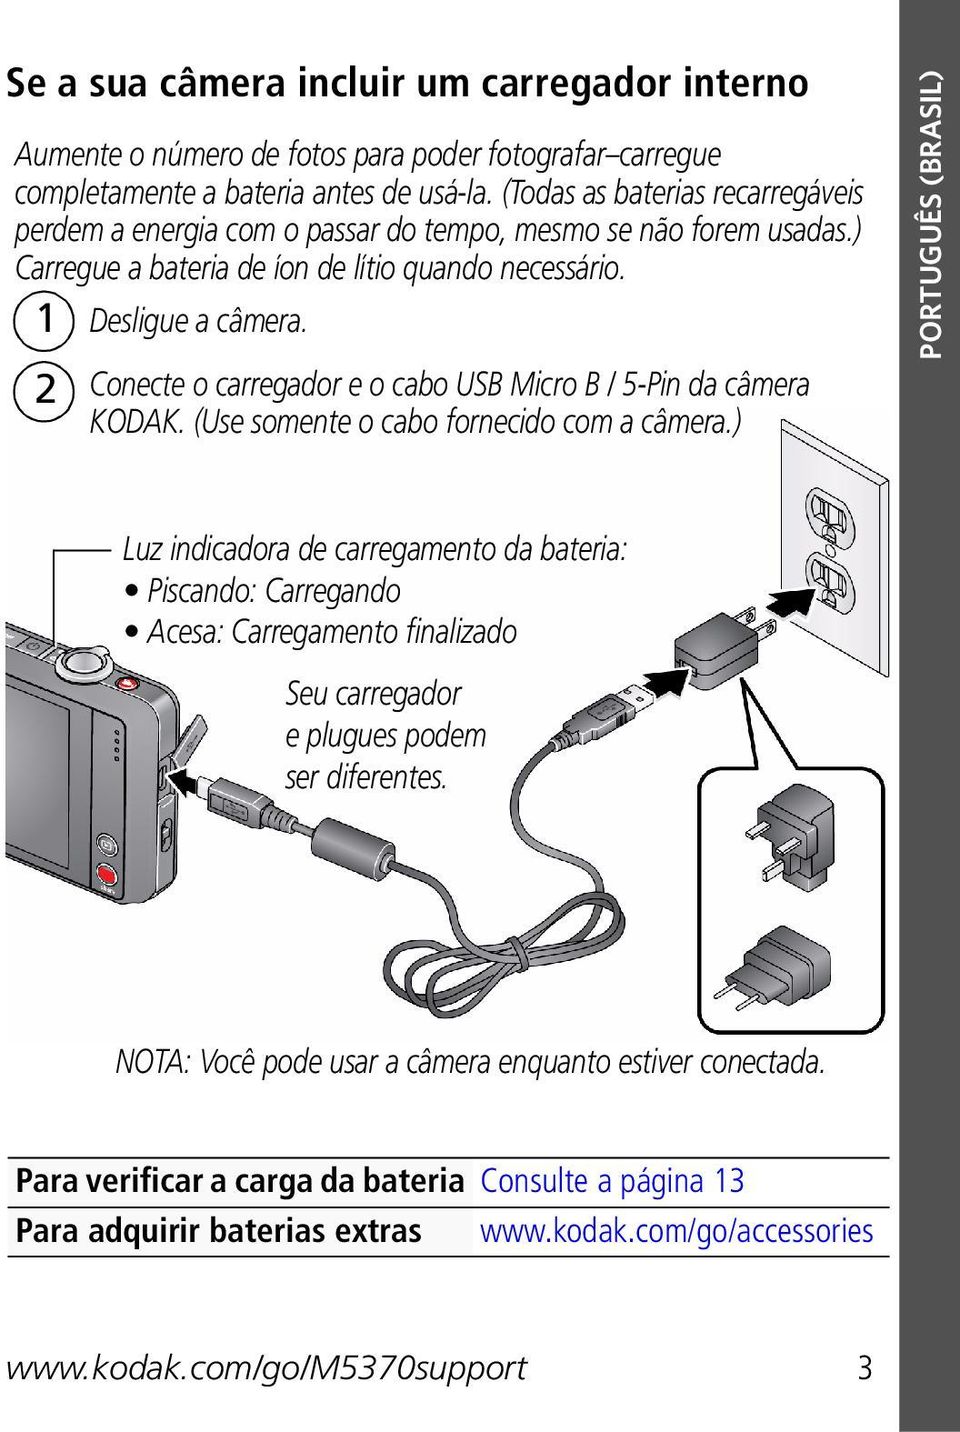 2 Conecte o carregador e o cabo USB Micro B / 5-Pin da câmera KODAK. (Use somente o cabo fornecido com a câmera.